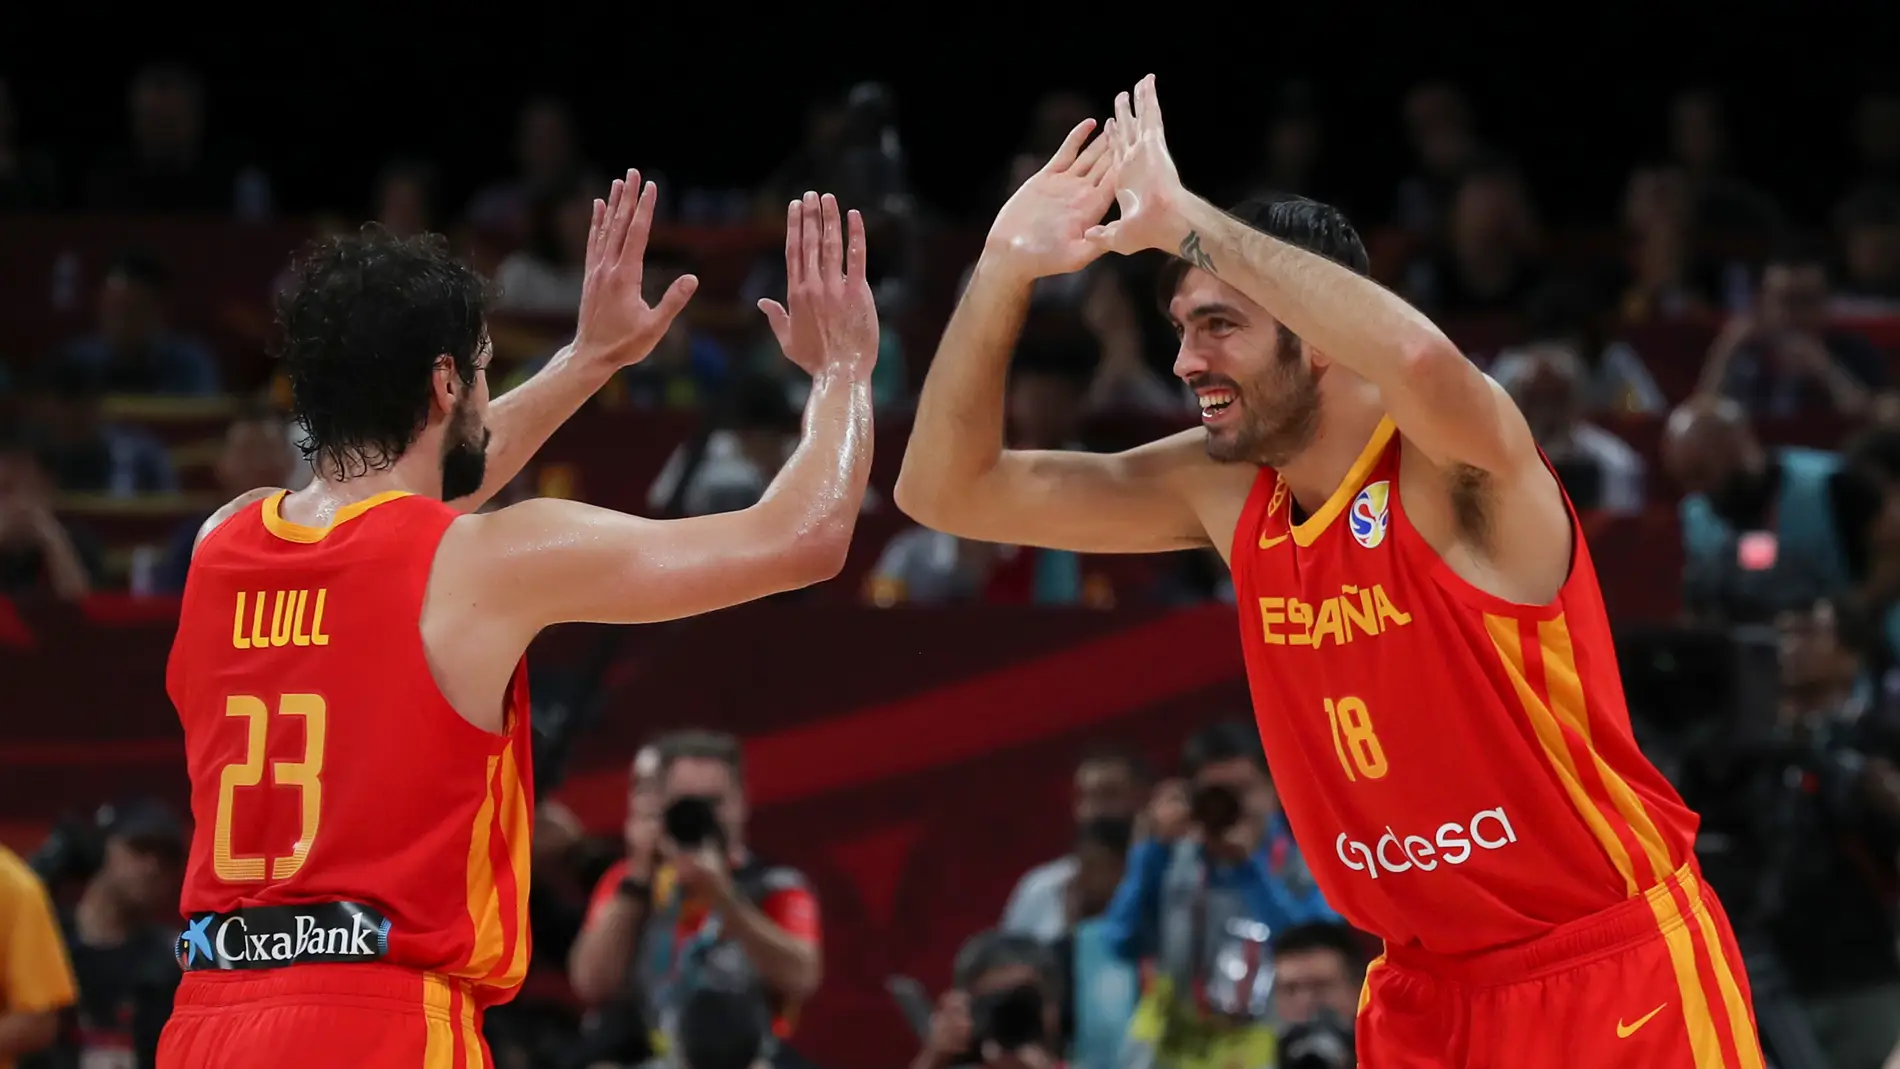 La selección Española gana el Mundial de Baloncesto China 2019